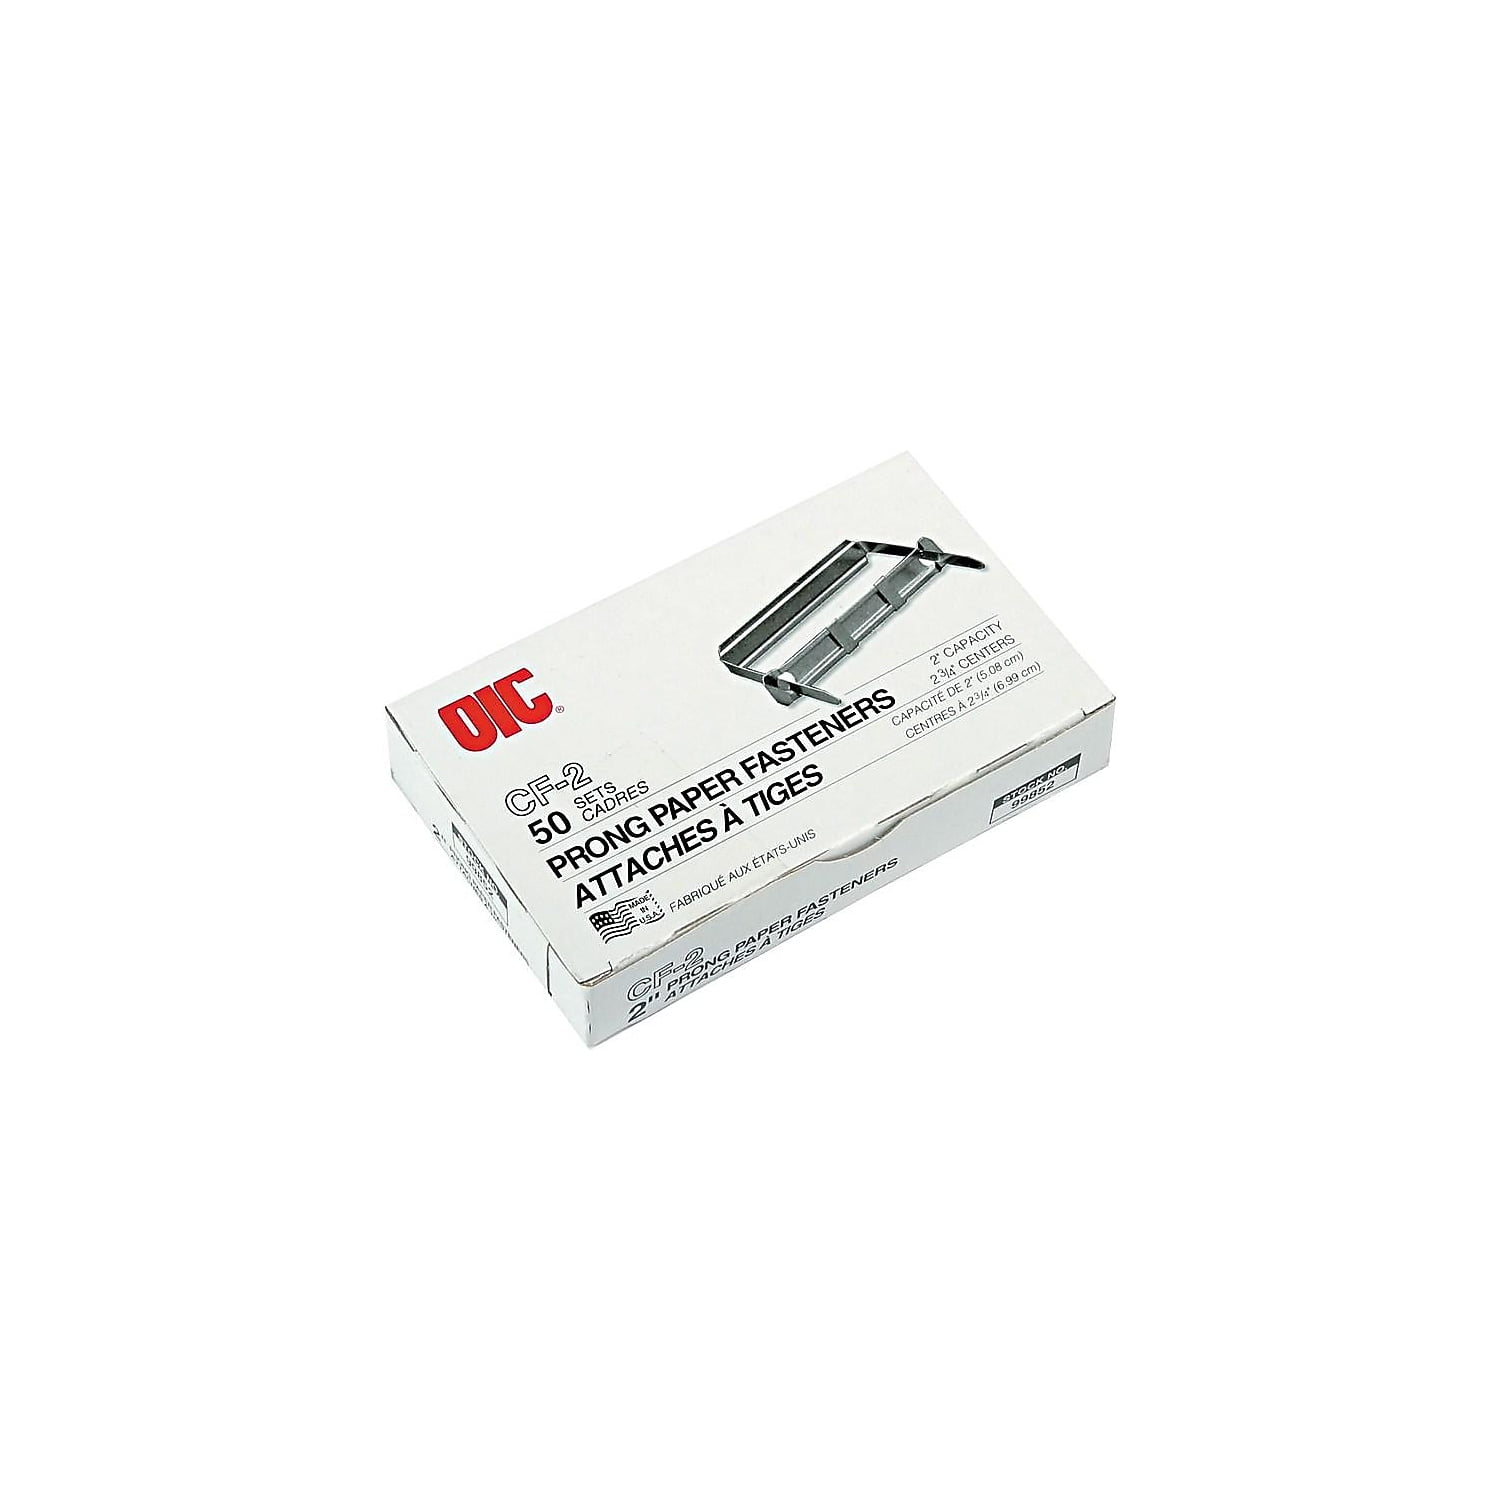 OLYMPX 50 Pcs of 3.5” Capacity Premium Metal Prong Paper Fastener